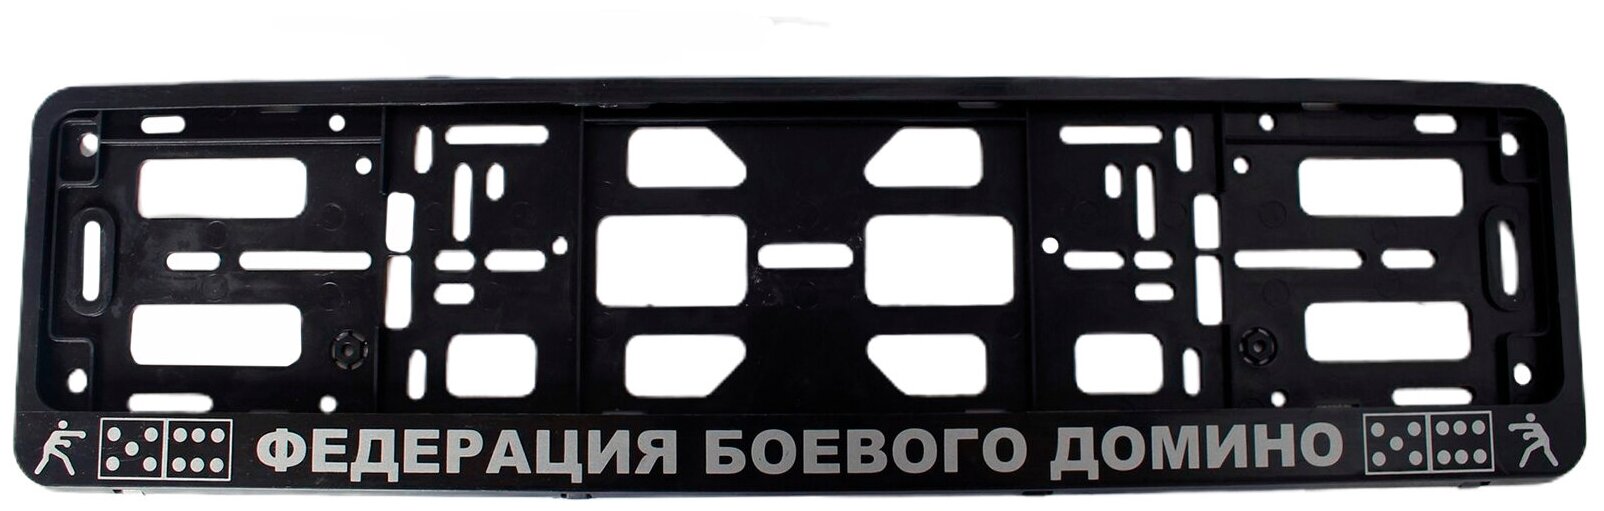 Рамка номерного знака Федерация боевого домино 1 штука